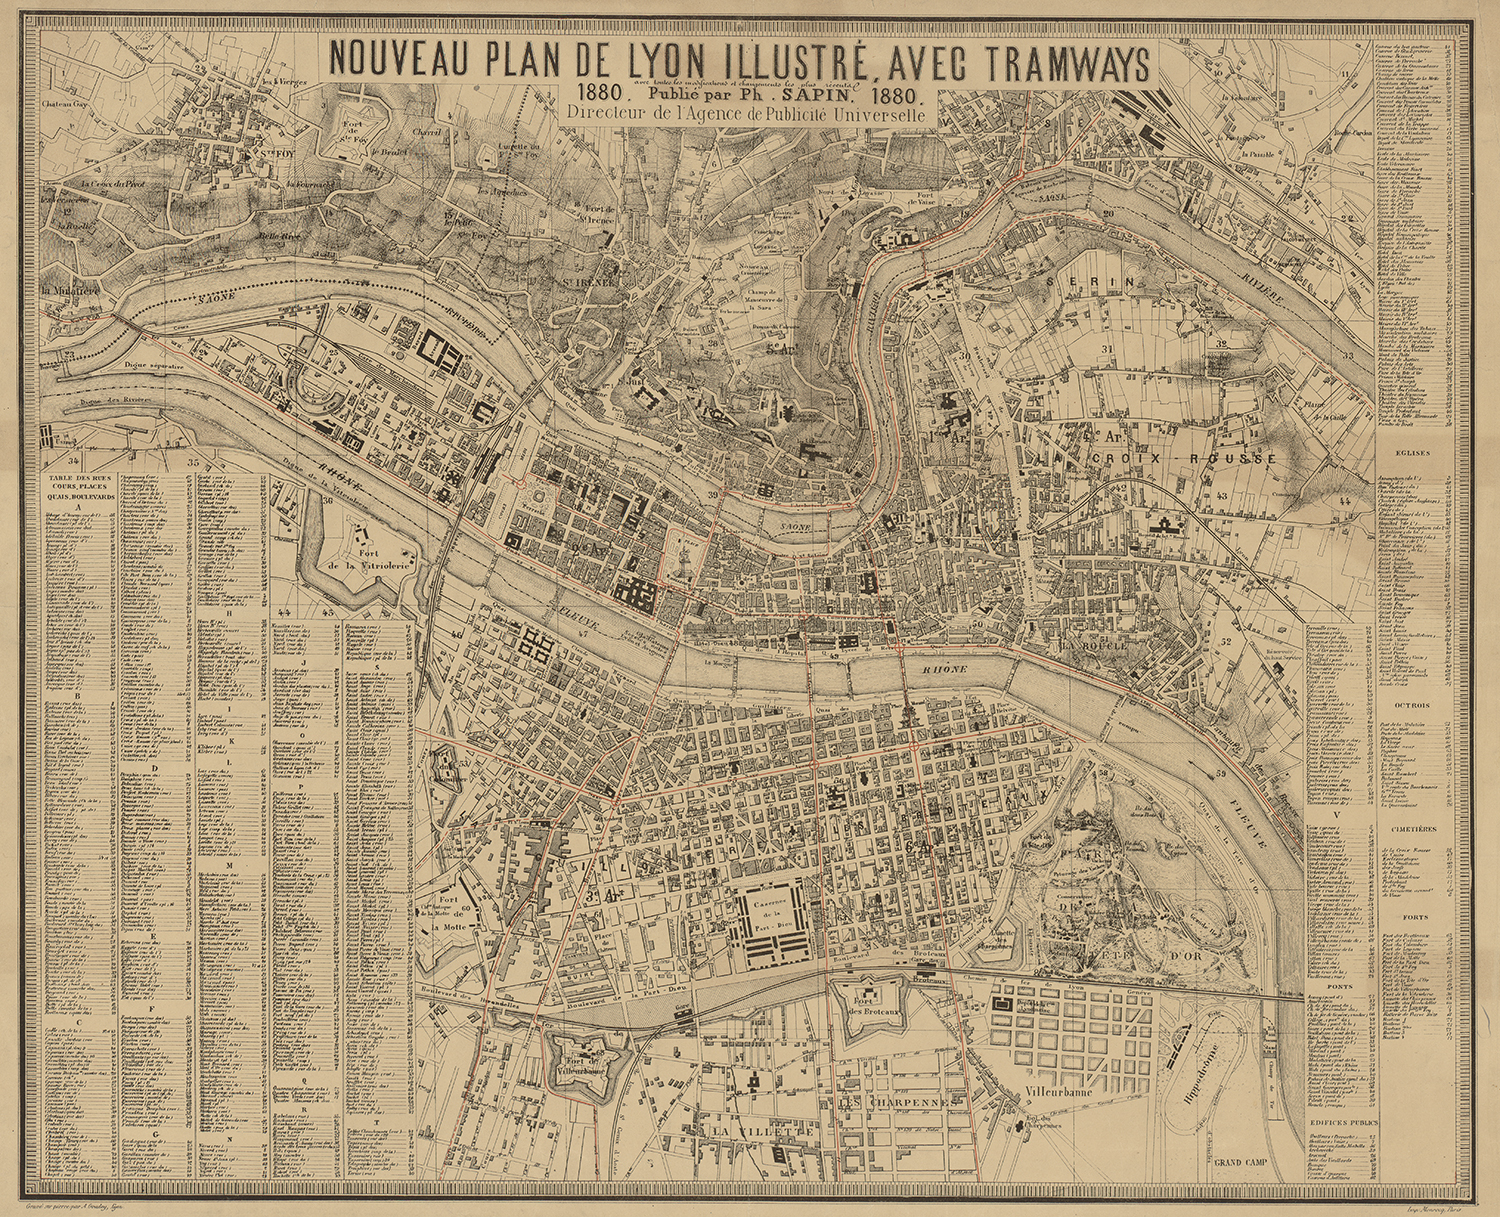 Nouveau plan de Lyon illustré avec les tramways -1880 - 2S/342/1